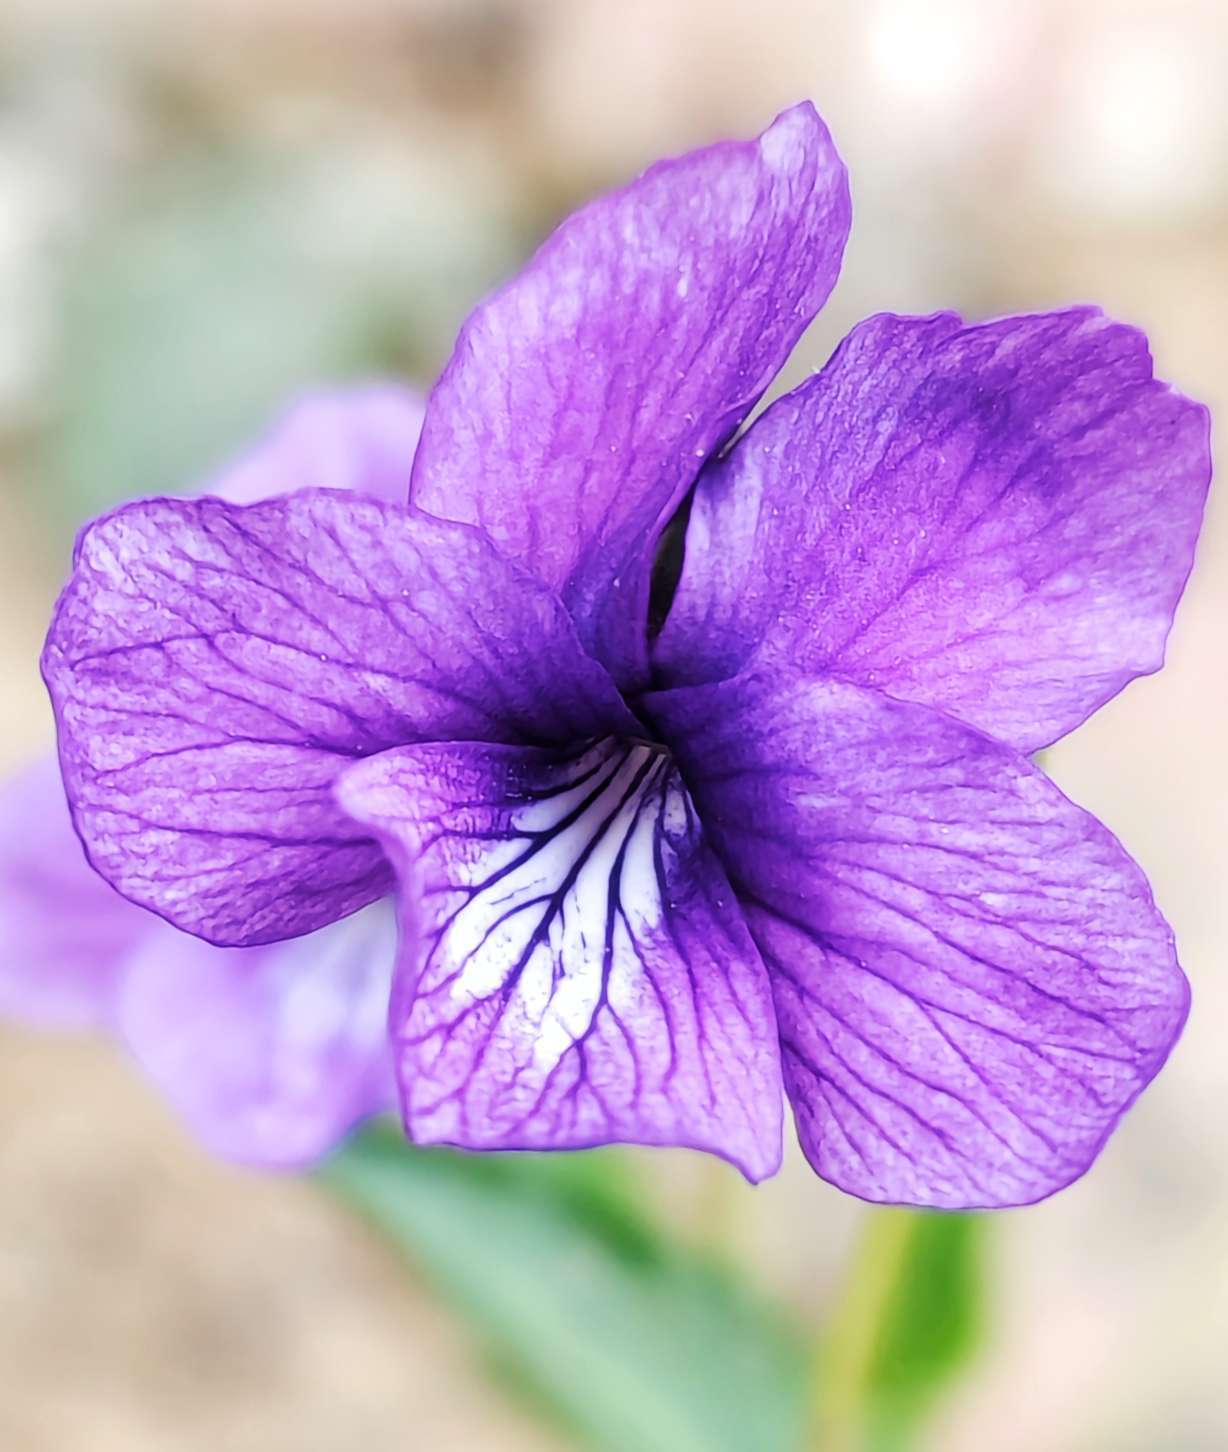 钉入泥土的地丁开出神秘紫色花朵